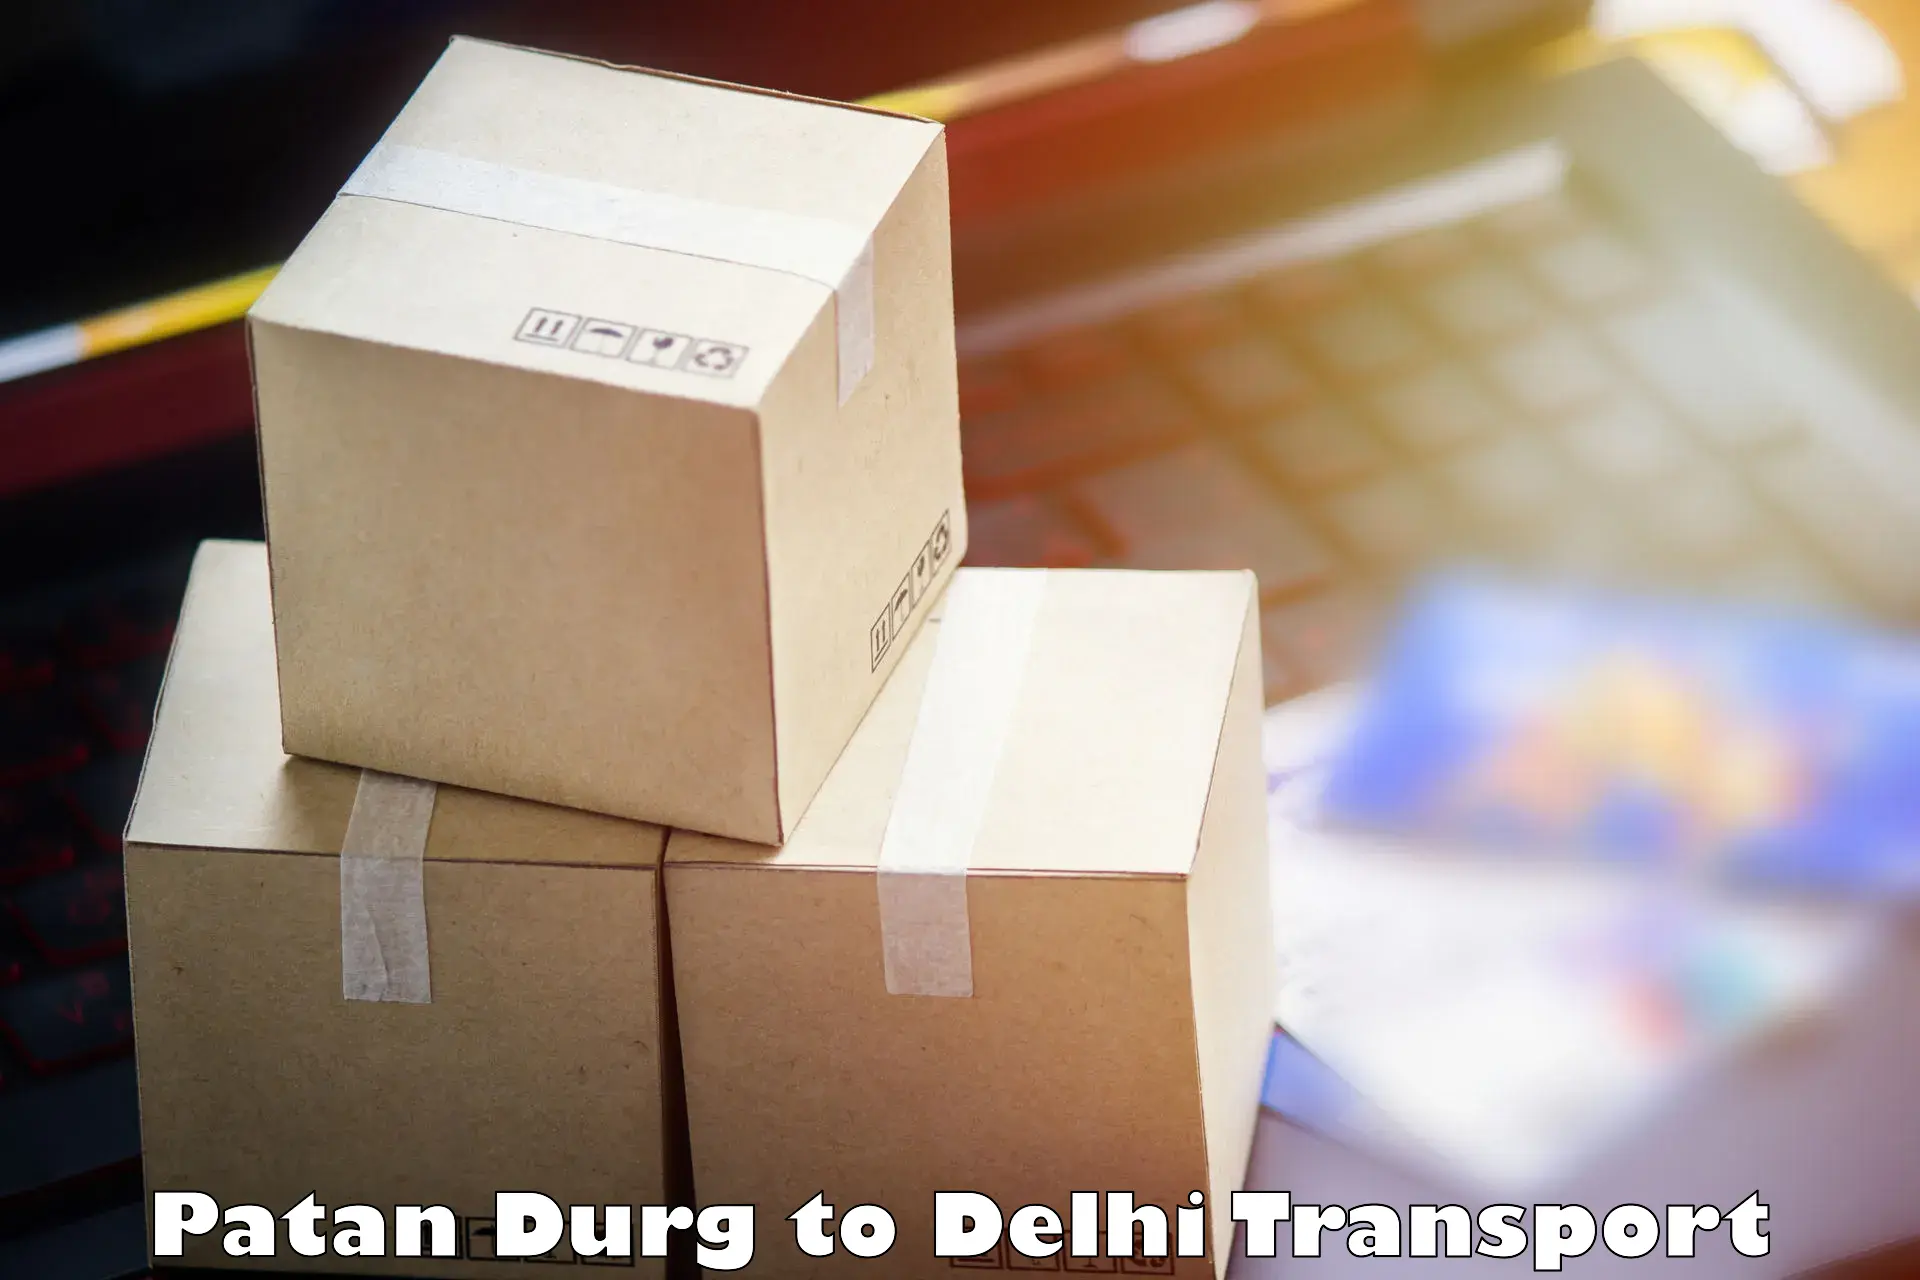 Inland transportation services Patan Durg to Jamia Millia Islamia New Delhi